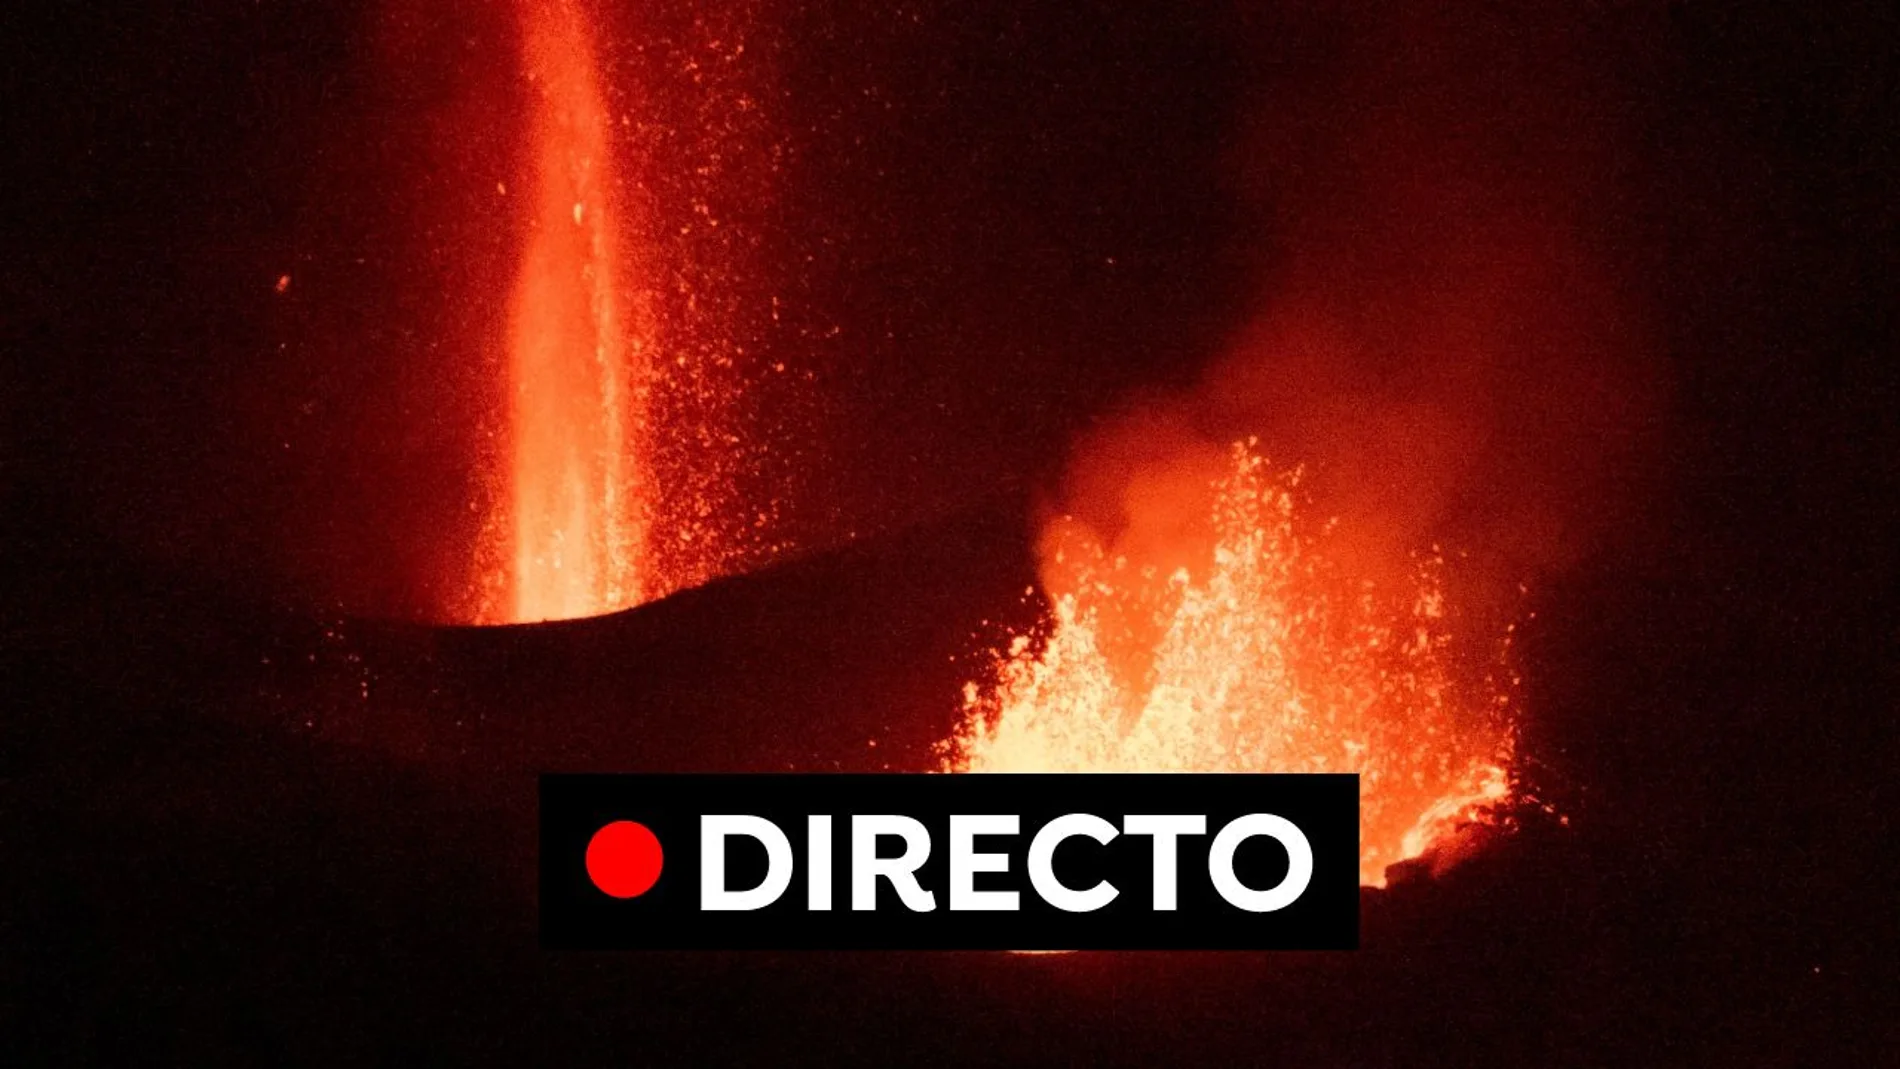 Última hora de la erupción volcánica de La Palma: nueva jornada de gran efusividad del volcán, en directo